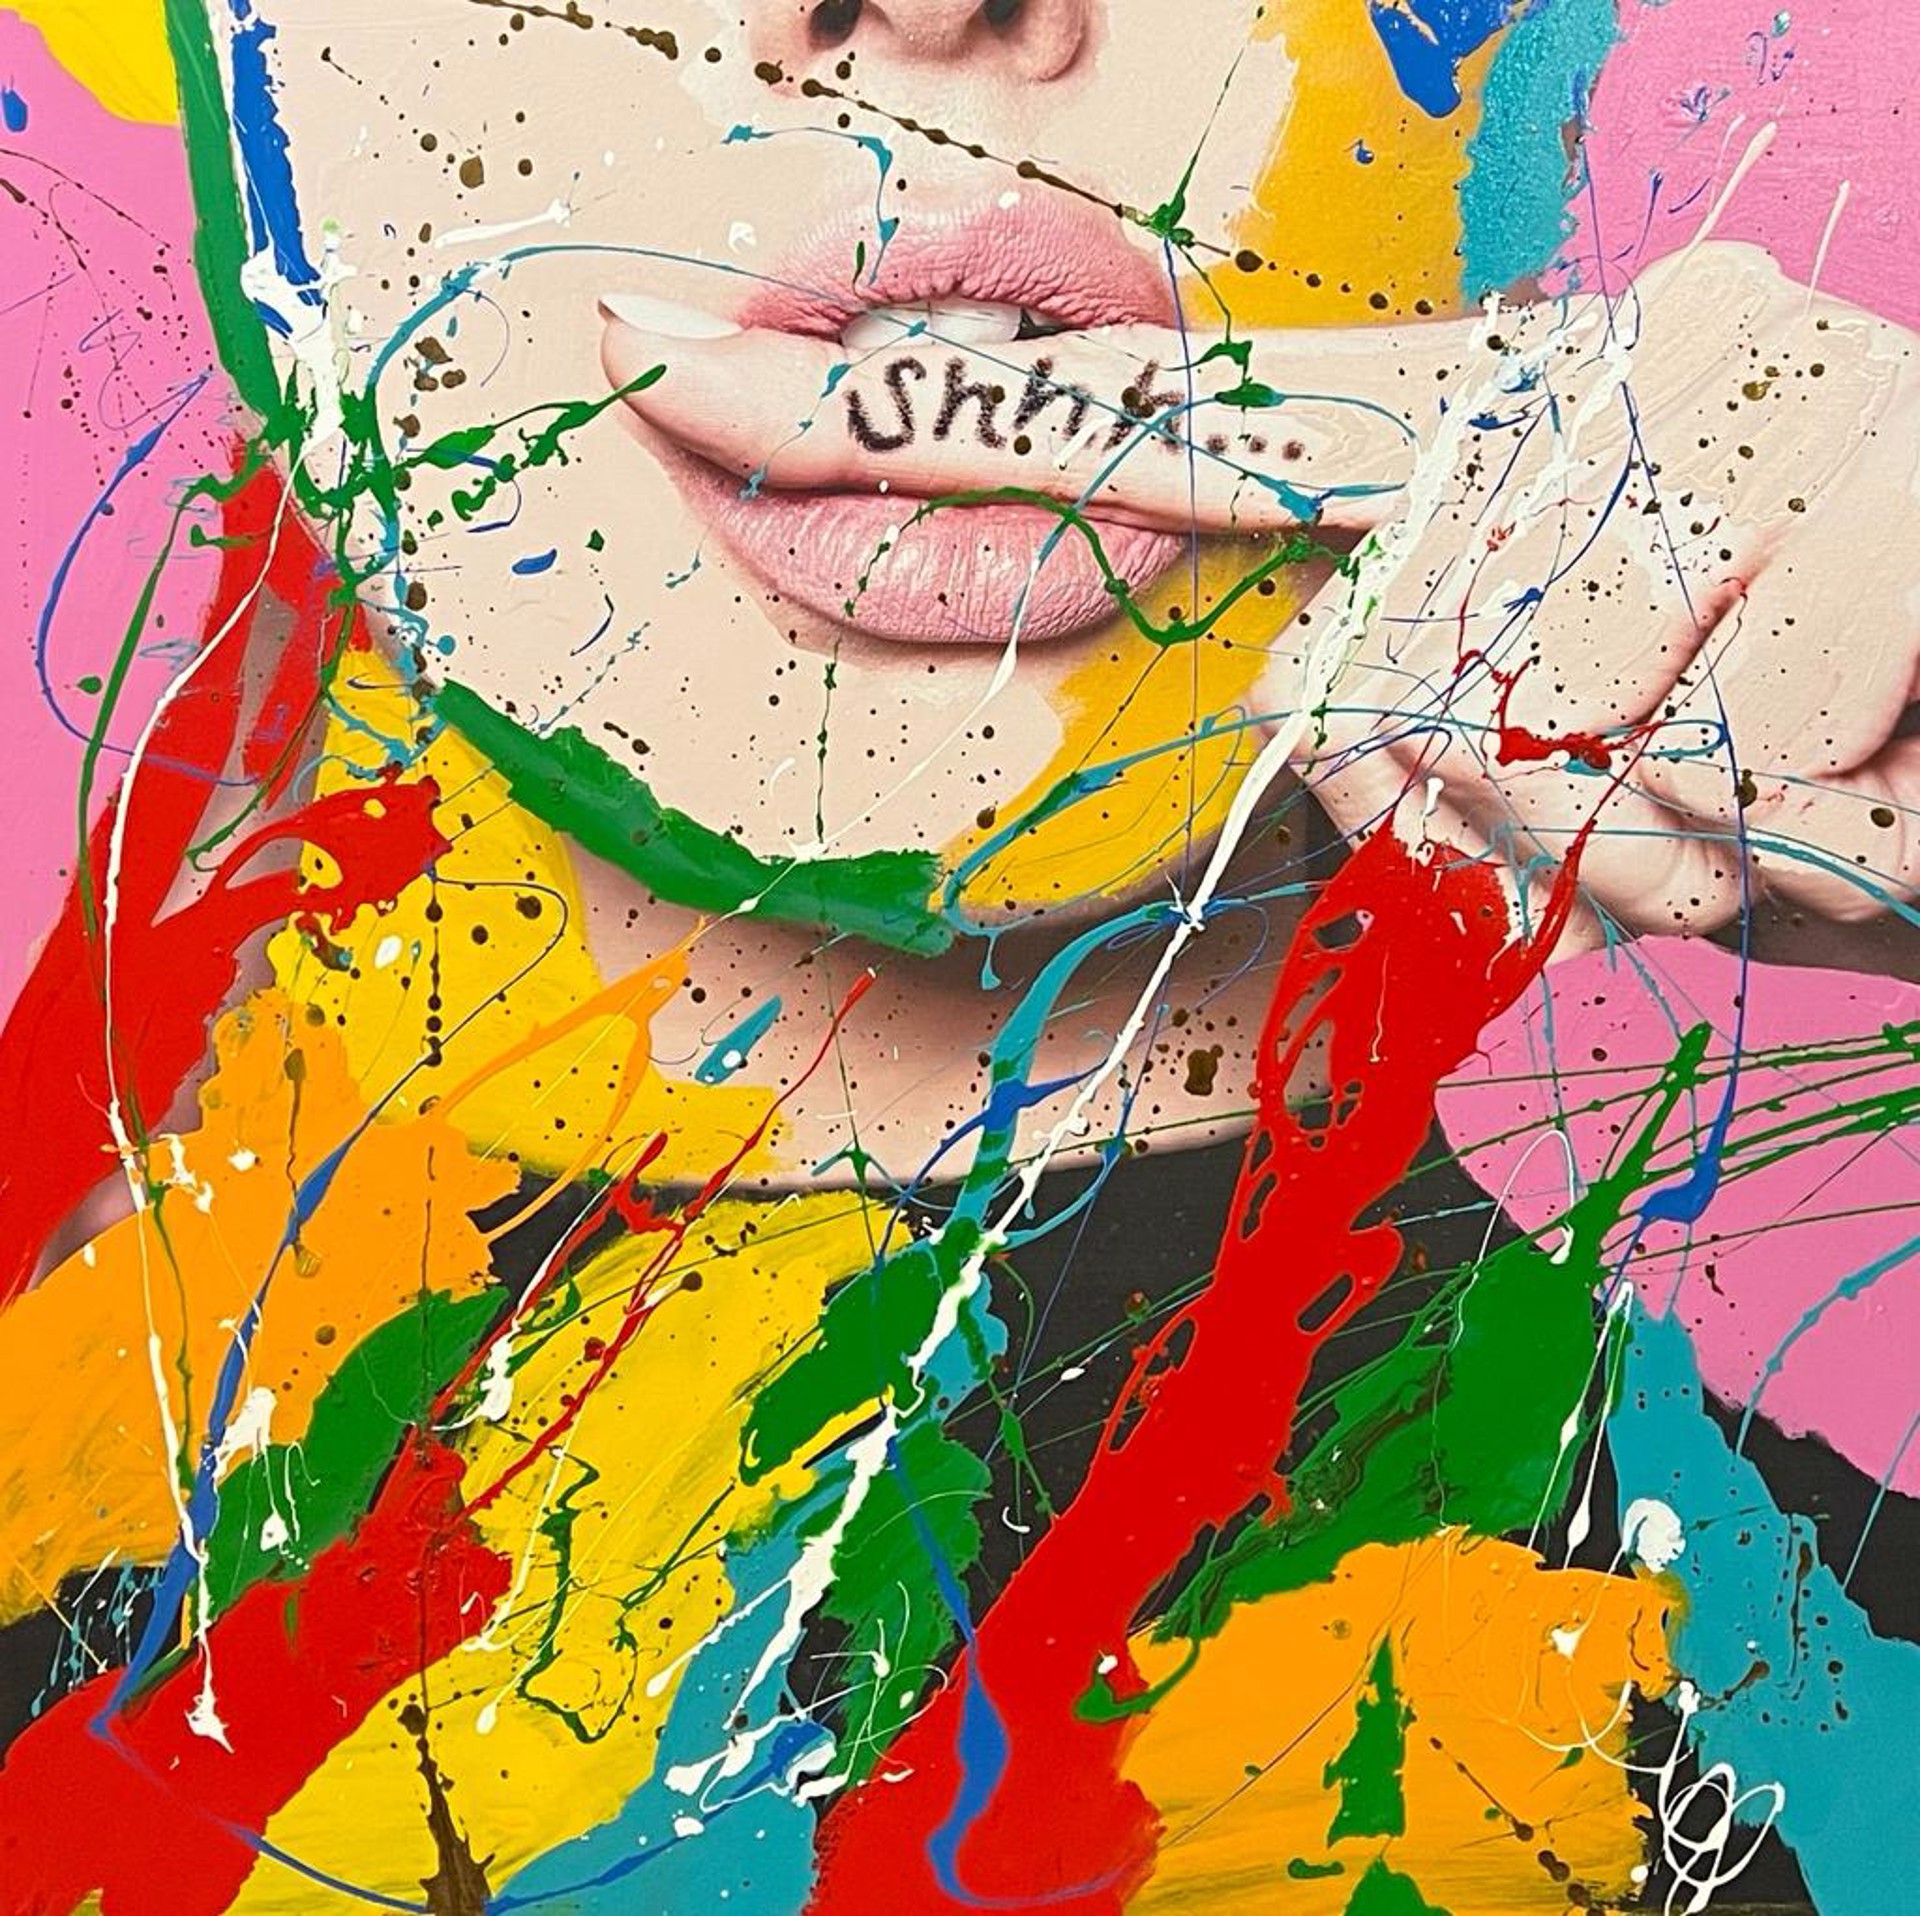 "Shh... I" by Abstract Paintings by Elena Bulatova